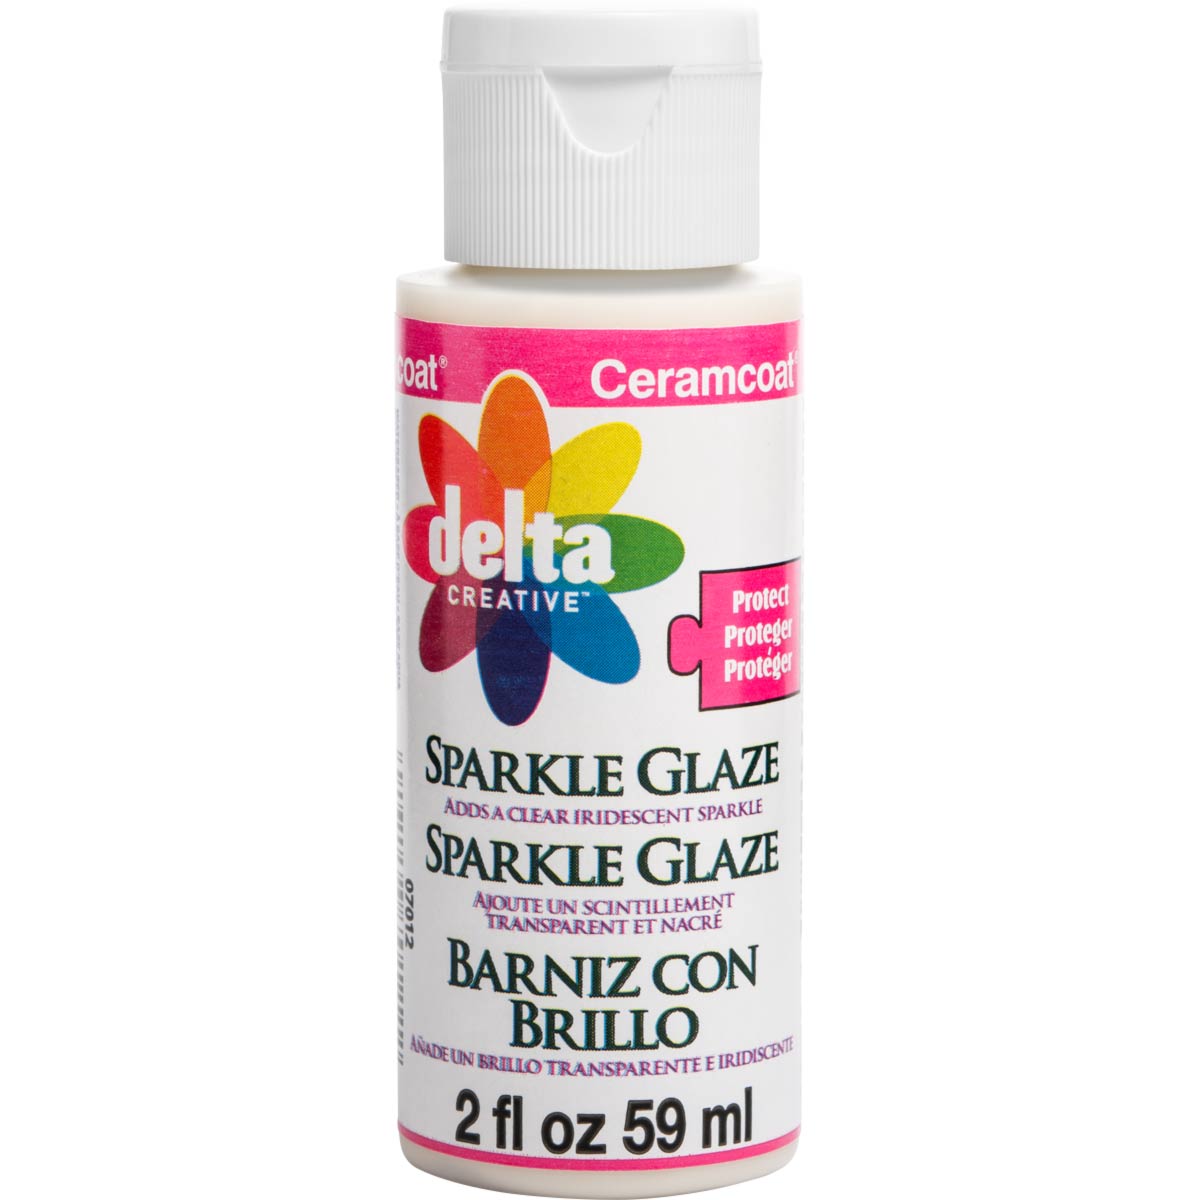 Delta Ceramcoat ® Varnishes - Sparkle Glaze, 2 oz. - 070120202W